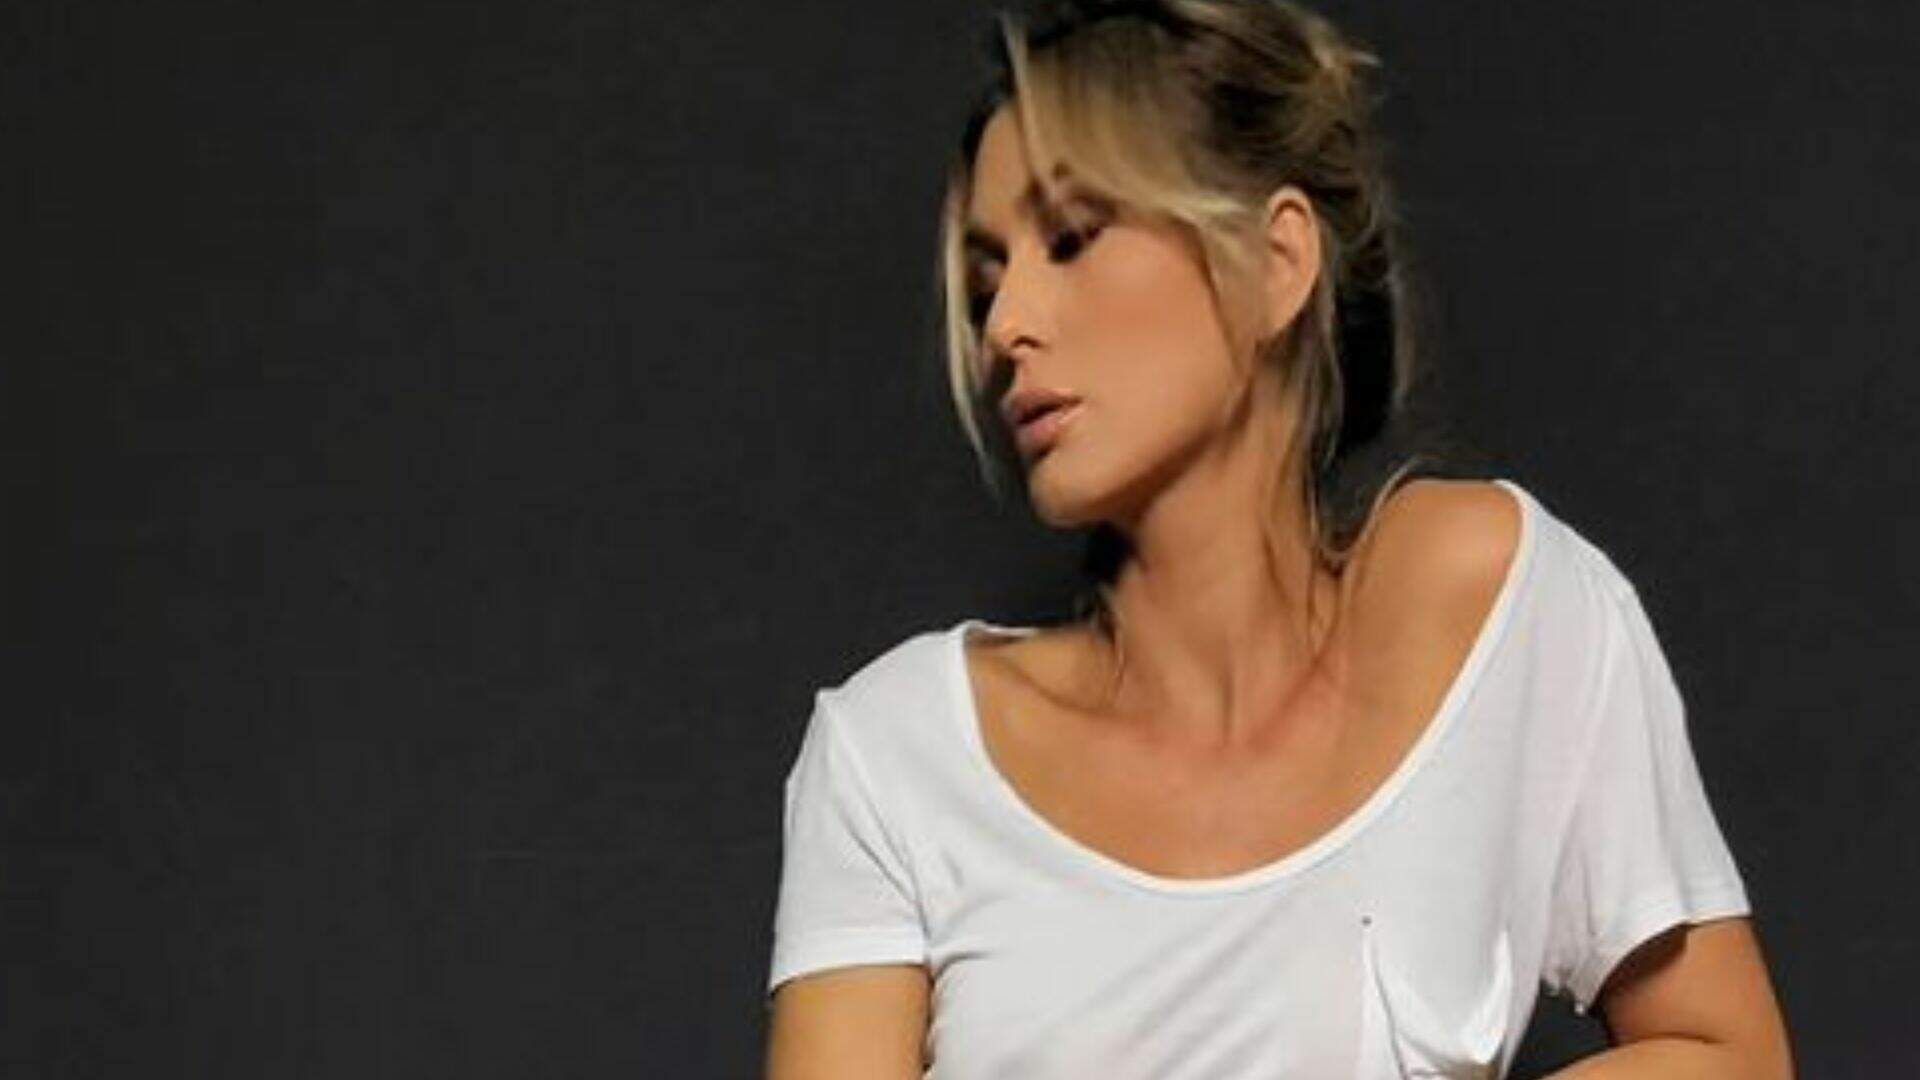 Nova contratada da Globo, Lívia Andrade posa com roupa marcando seios: “Pra que sutiã?” - Metropolitana FM